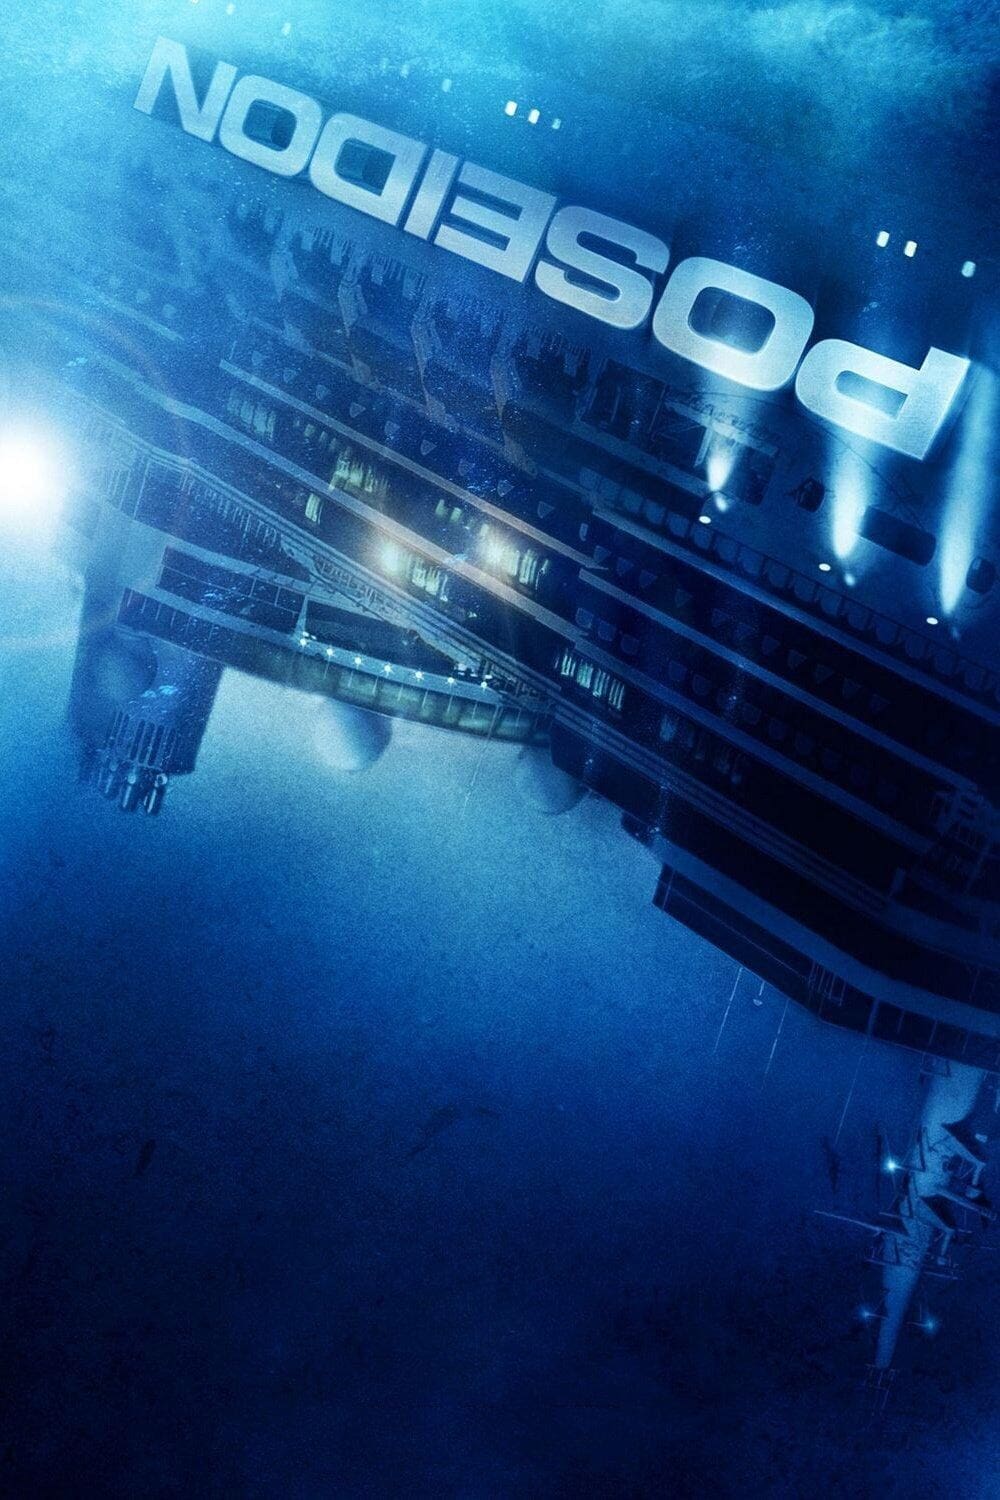 Con Tàu Tuyệt Mệnh (Poseidon) [2006]